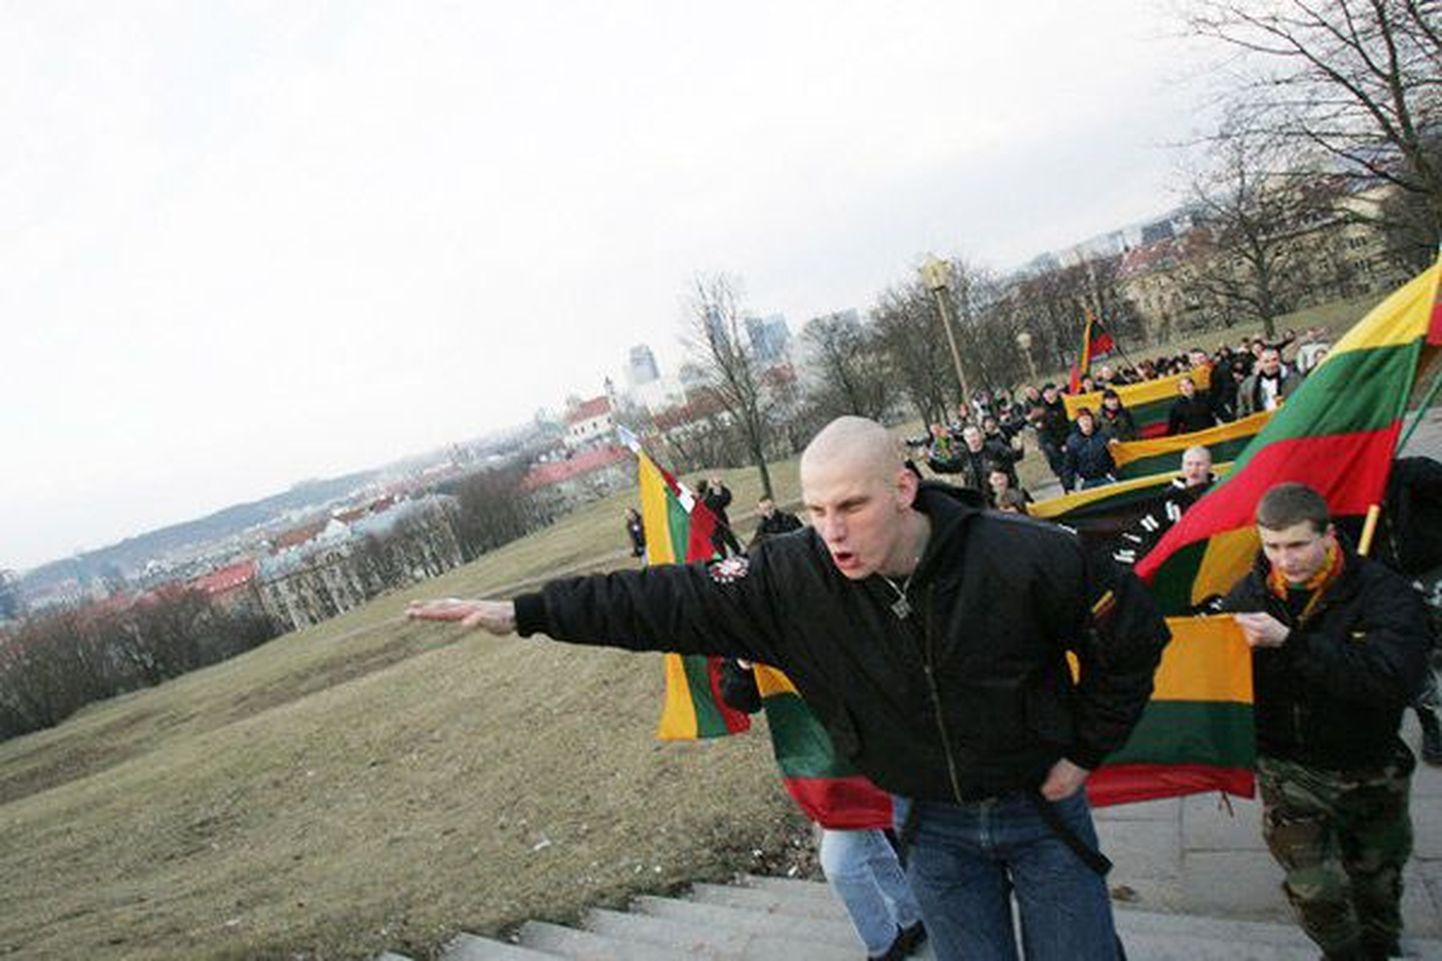 Организация Antifa Lietuva вывесила в Интернете вызвавшие широкий резонанс фото, на которых литовские военнослужащие участвуют в мероприятиях неонацистов.